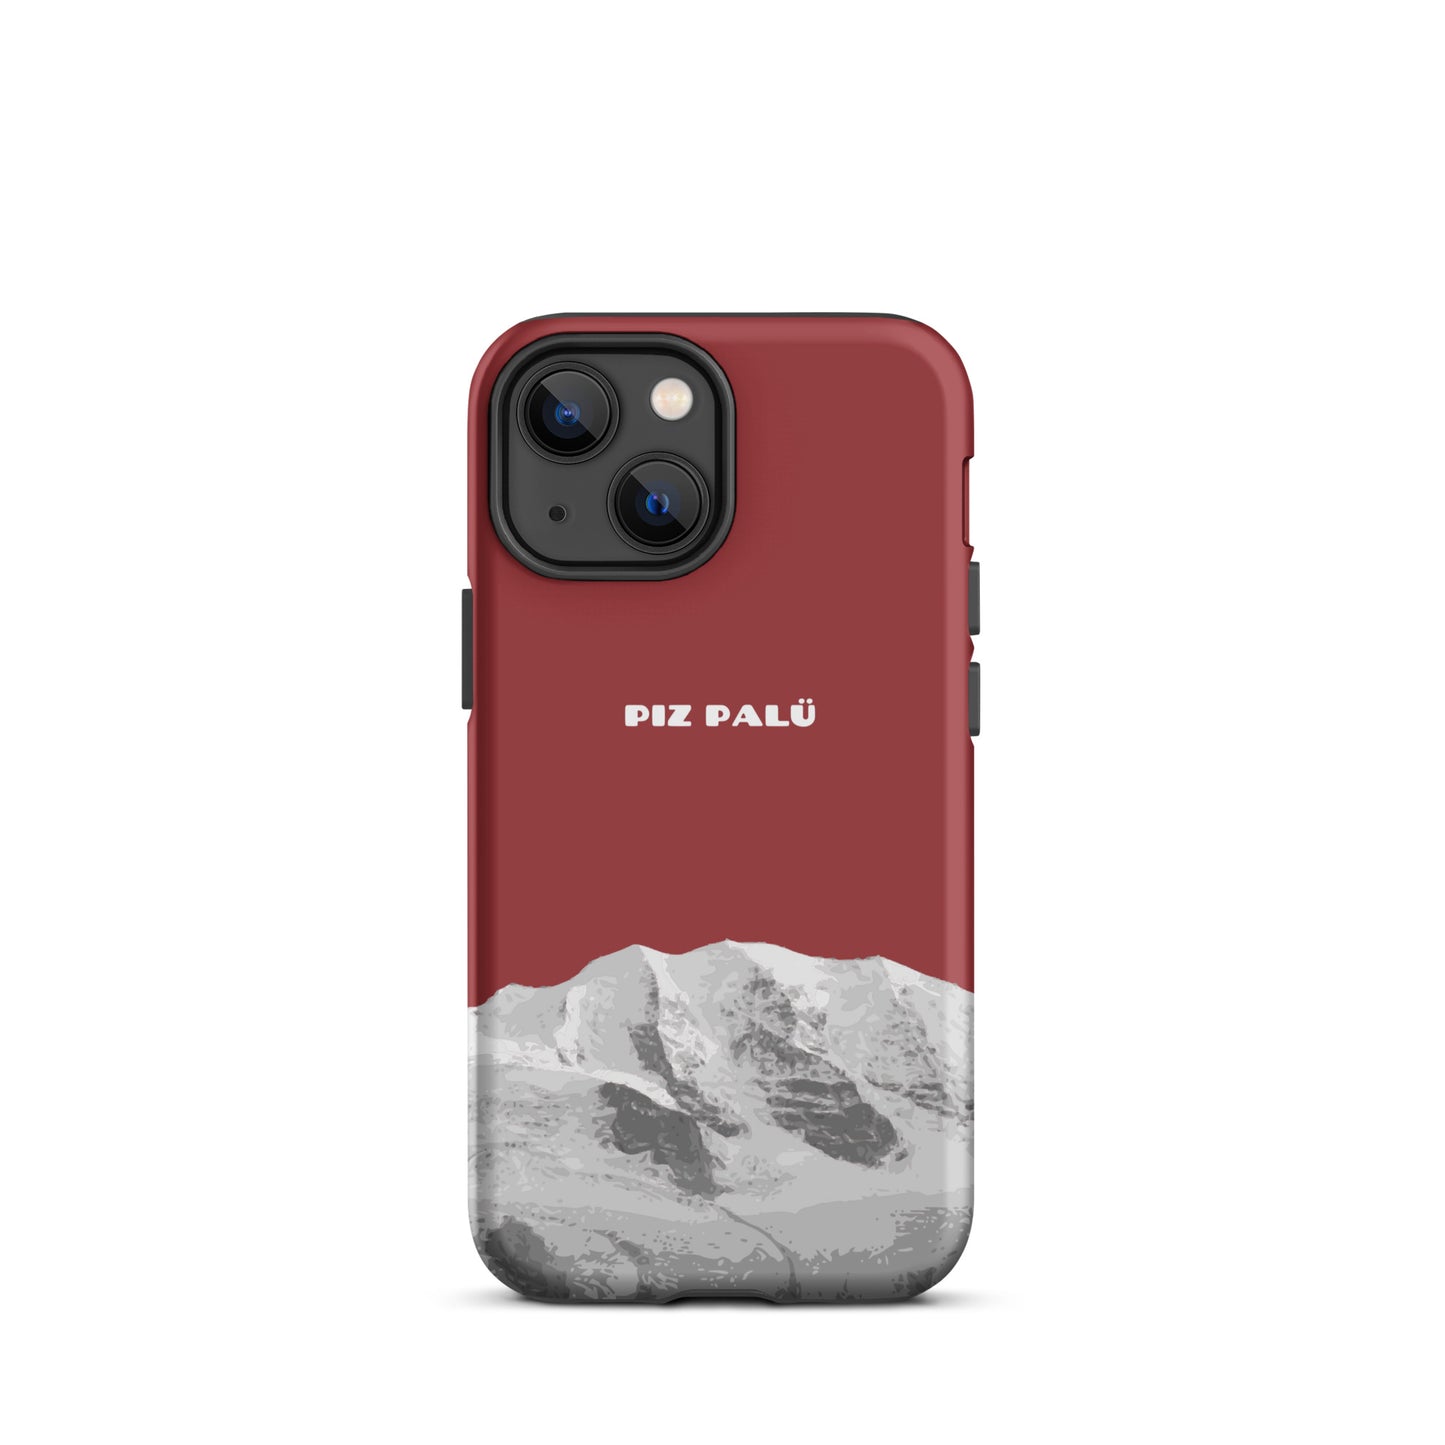 Hülle für das iPhone 13 Mini von Apple in der Farbe Pastellviolett, dass den Piz Palü in Graubünden zeigt.